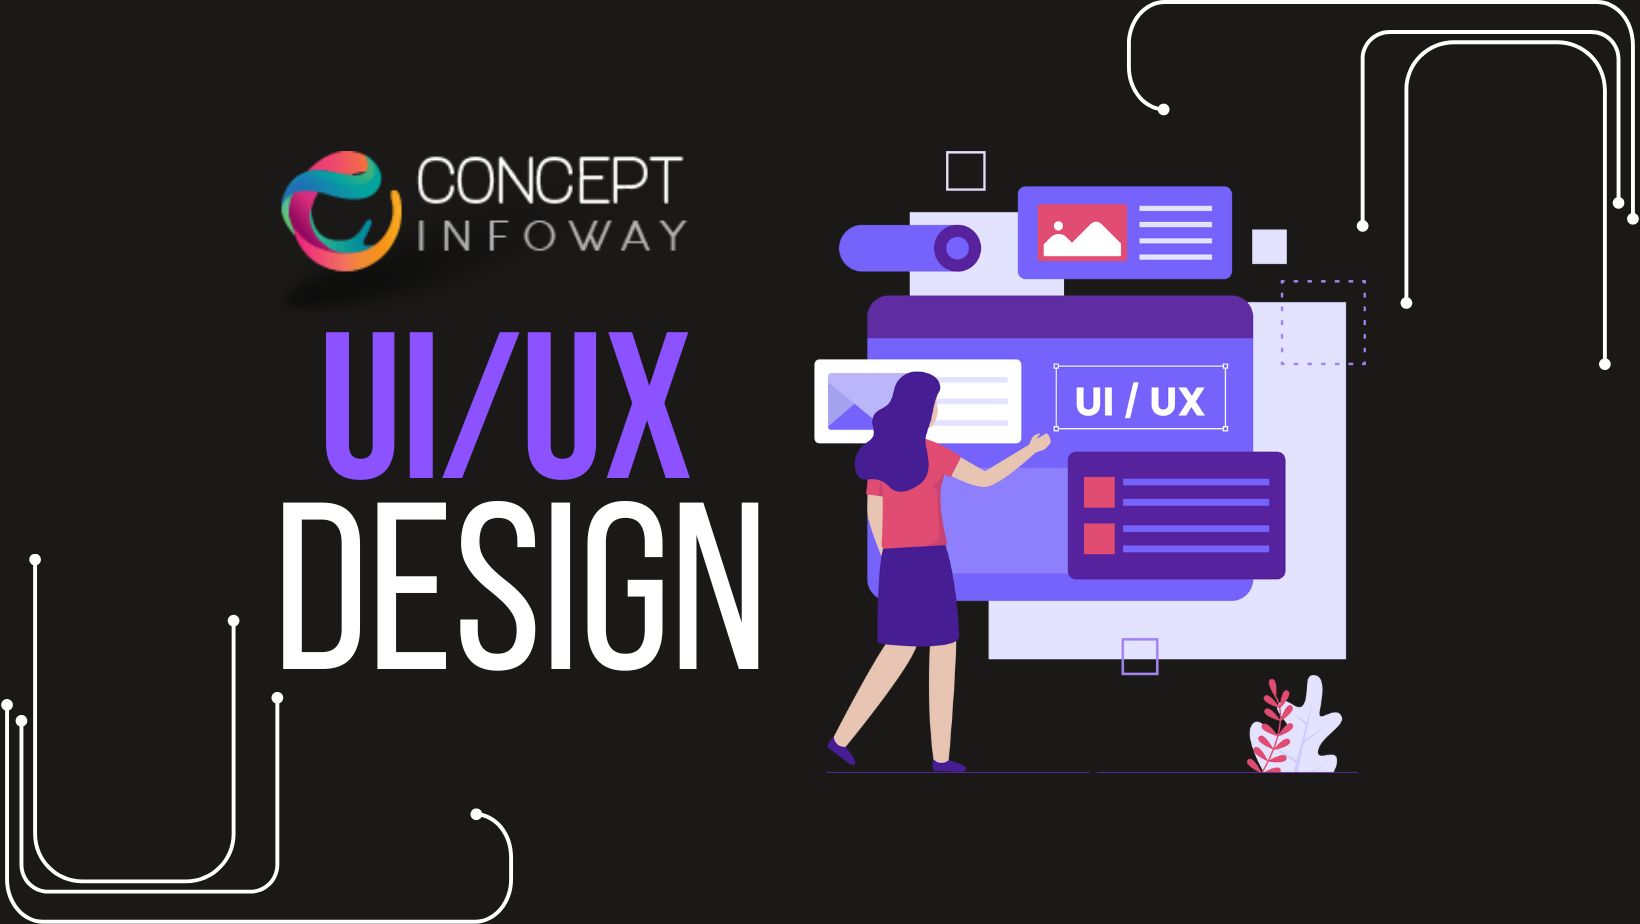 UI/UX Design - Concept Infoway